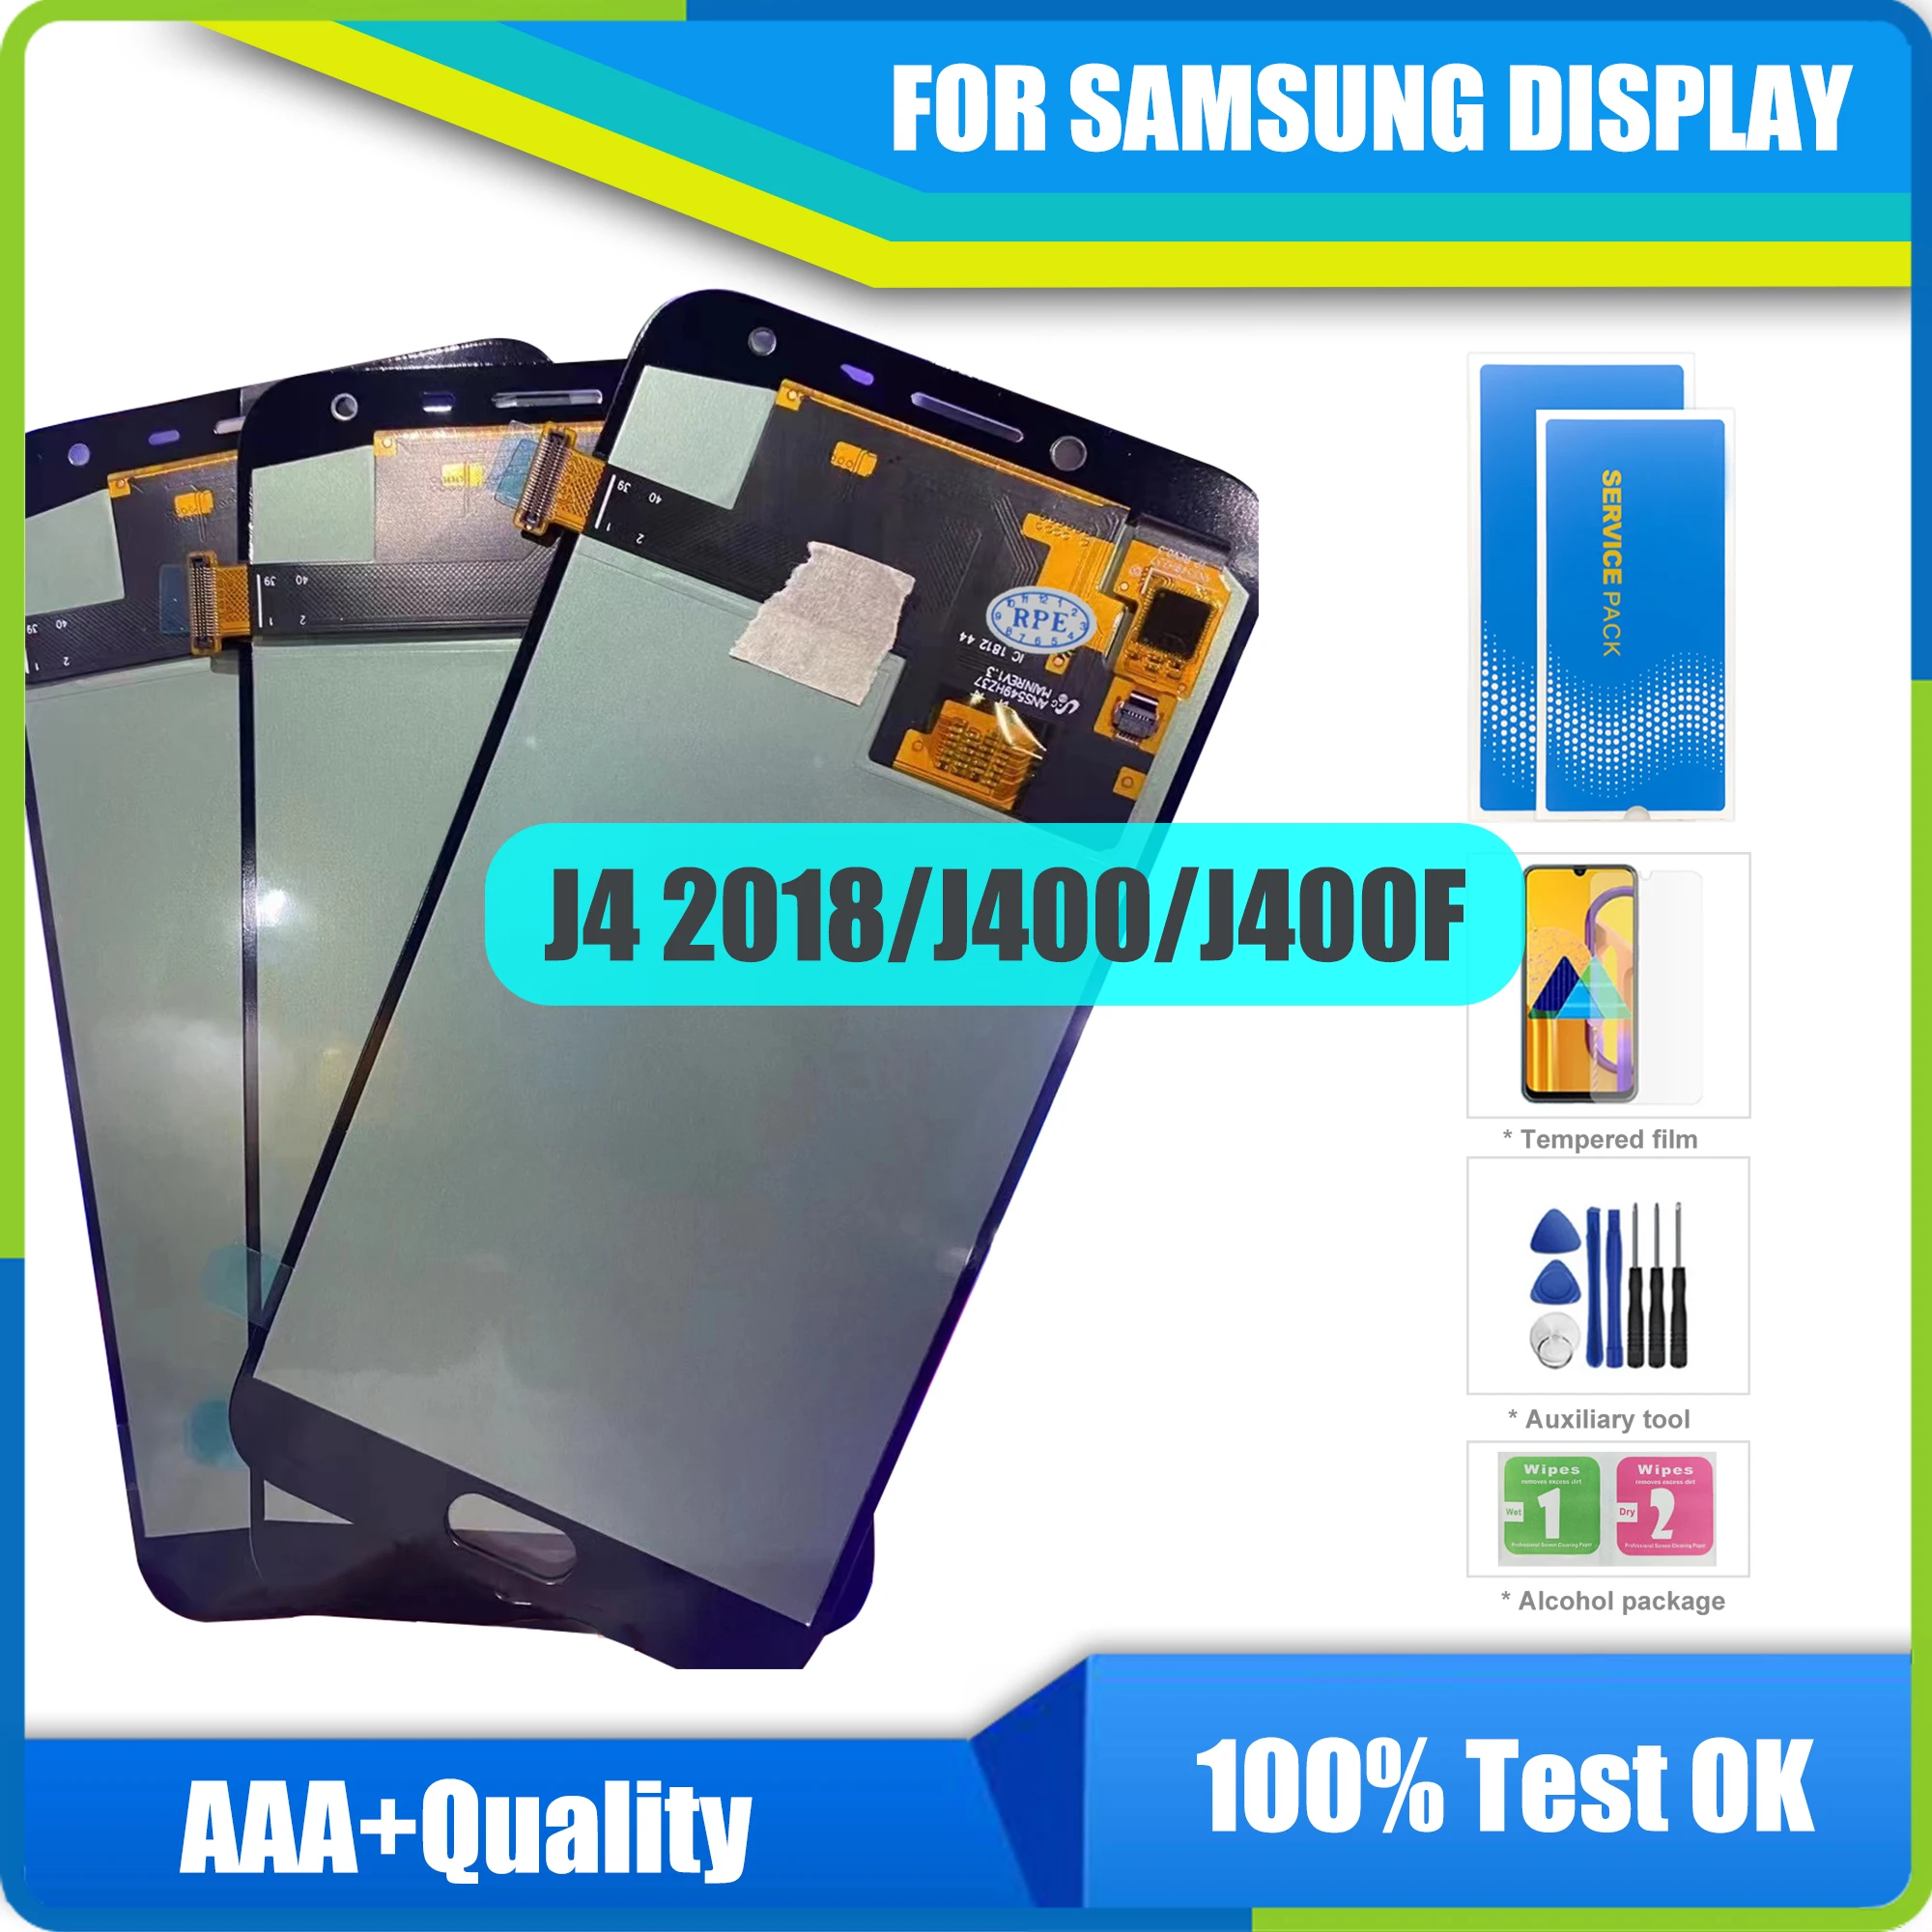 

ЖК-дисплей Super AMOLED для SAMSUNG Galaxy J4 J400 J400F J400F / DS J400G/DS, ЖК-дисплей с сенсорным экраном в сборе, замена